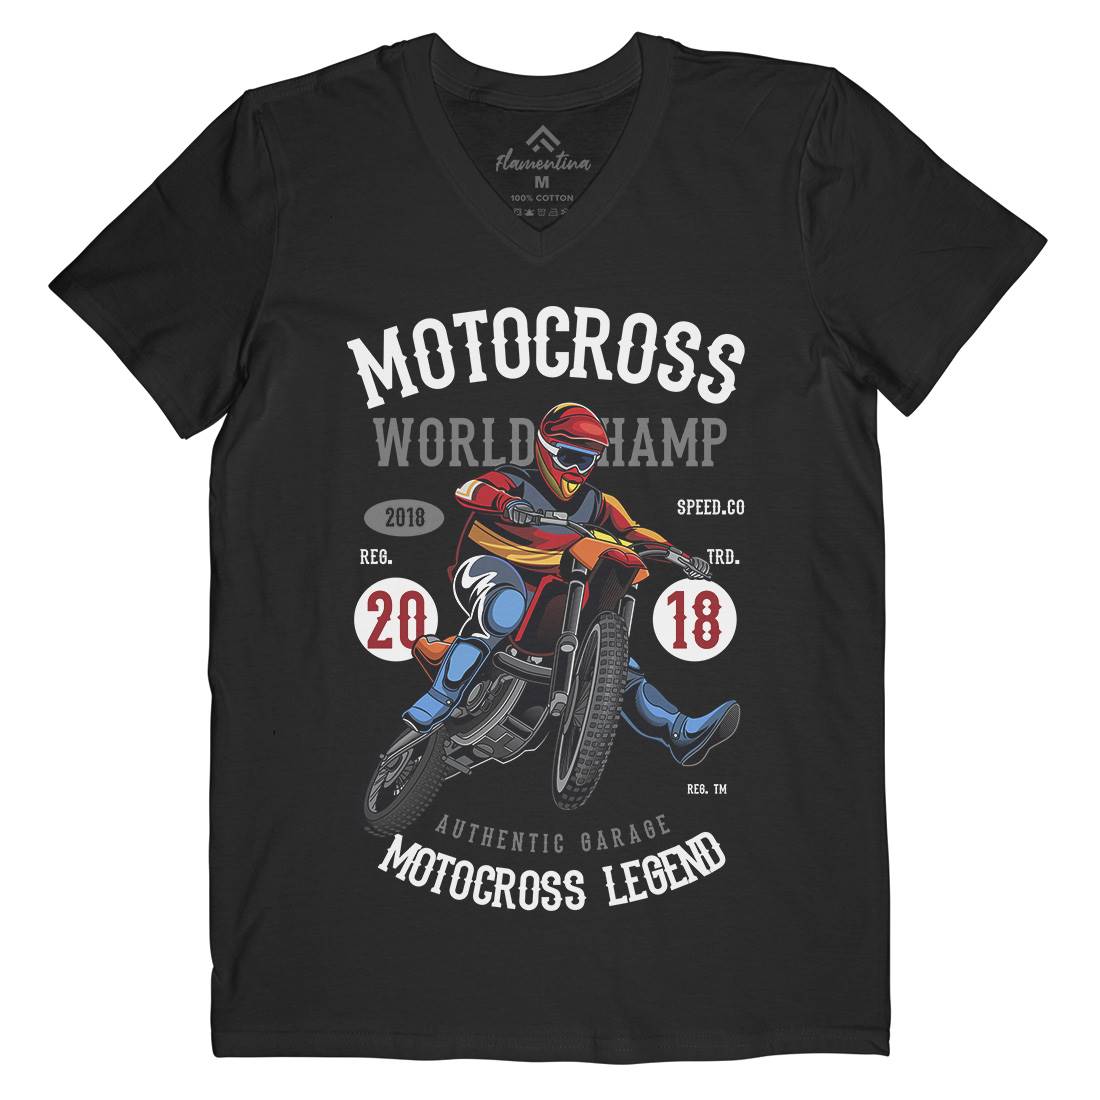 Motocross World Champ Mens V-Neck T-Shirt Motorcycles C398